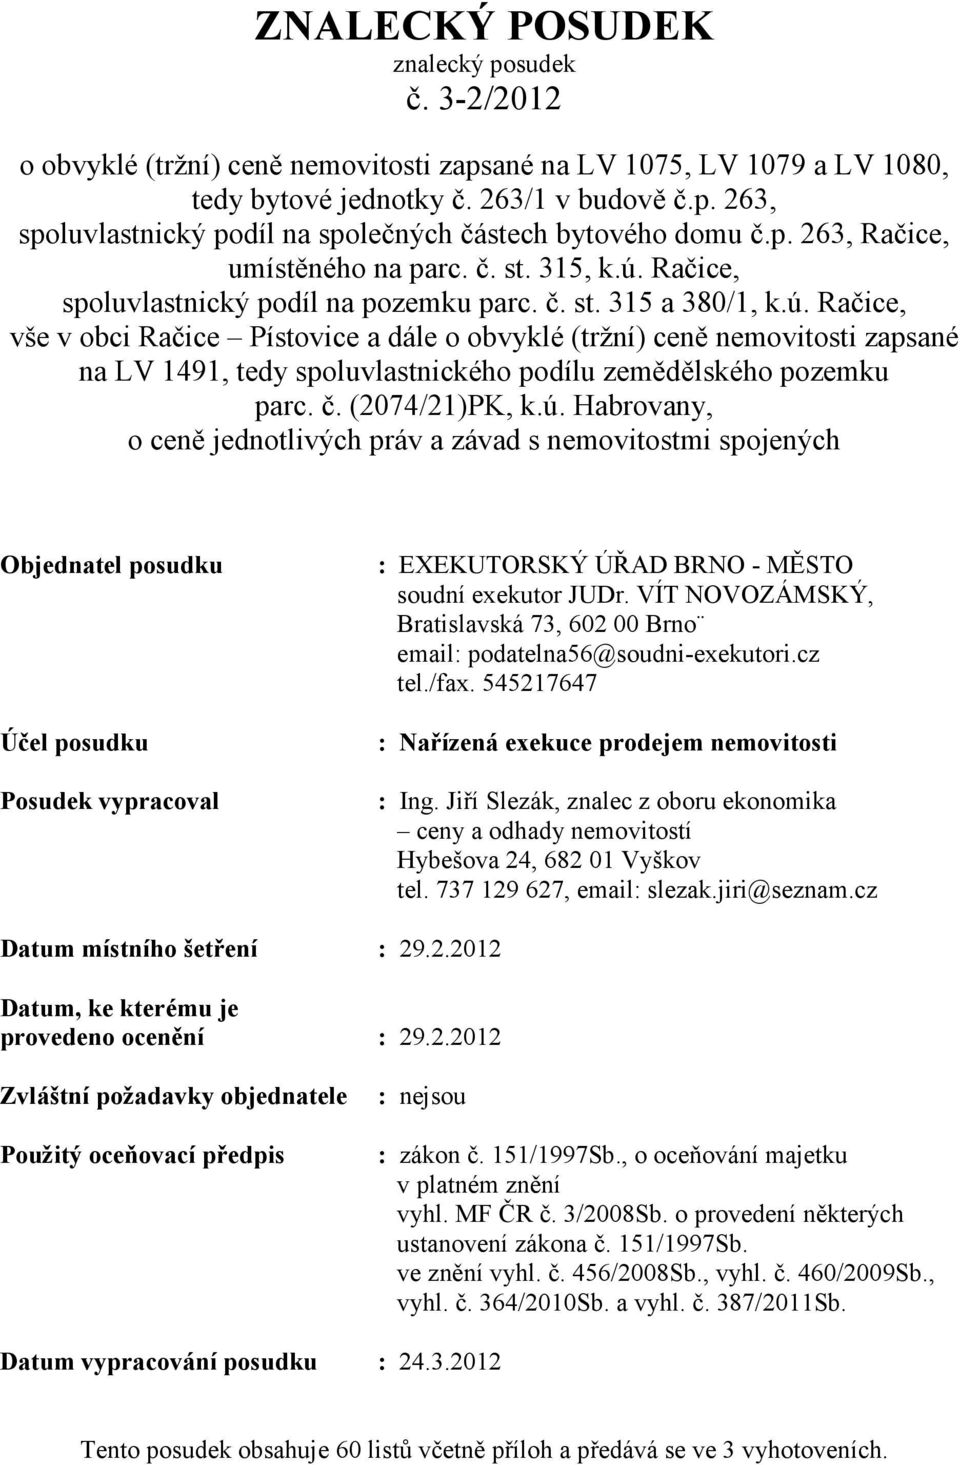 Račice, spoluvlastnický podíl na pozemku parc. č. st. 315 a 380/1, k.ú.